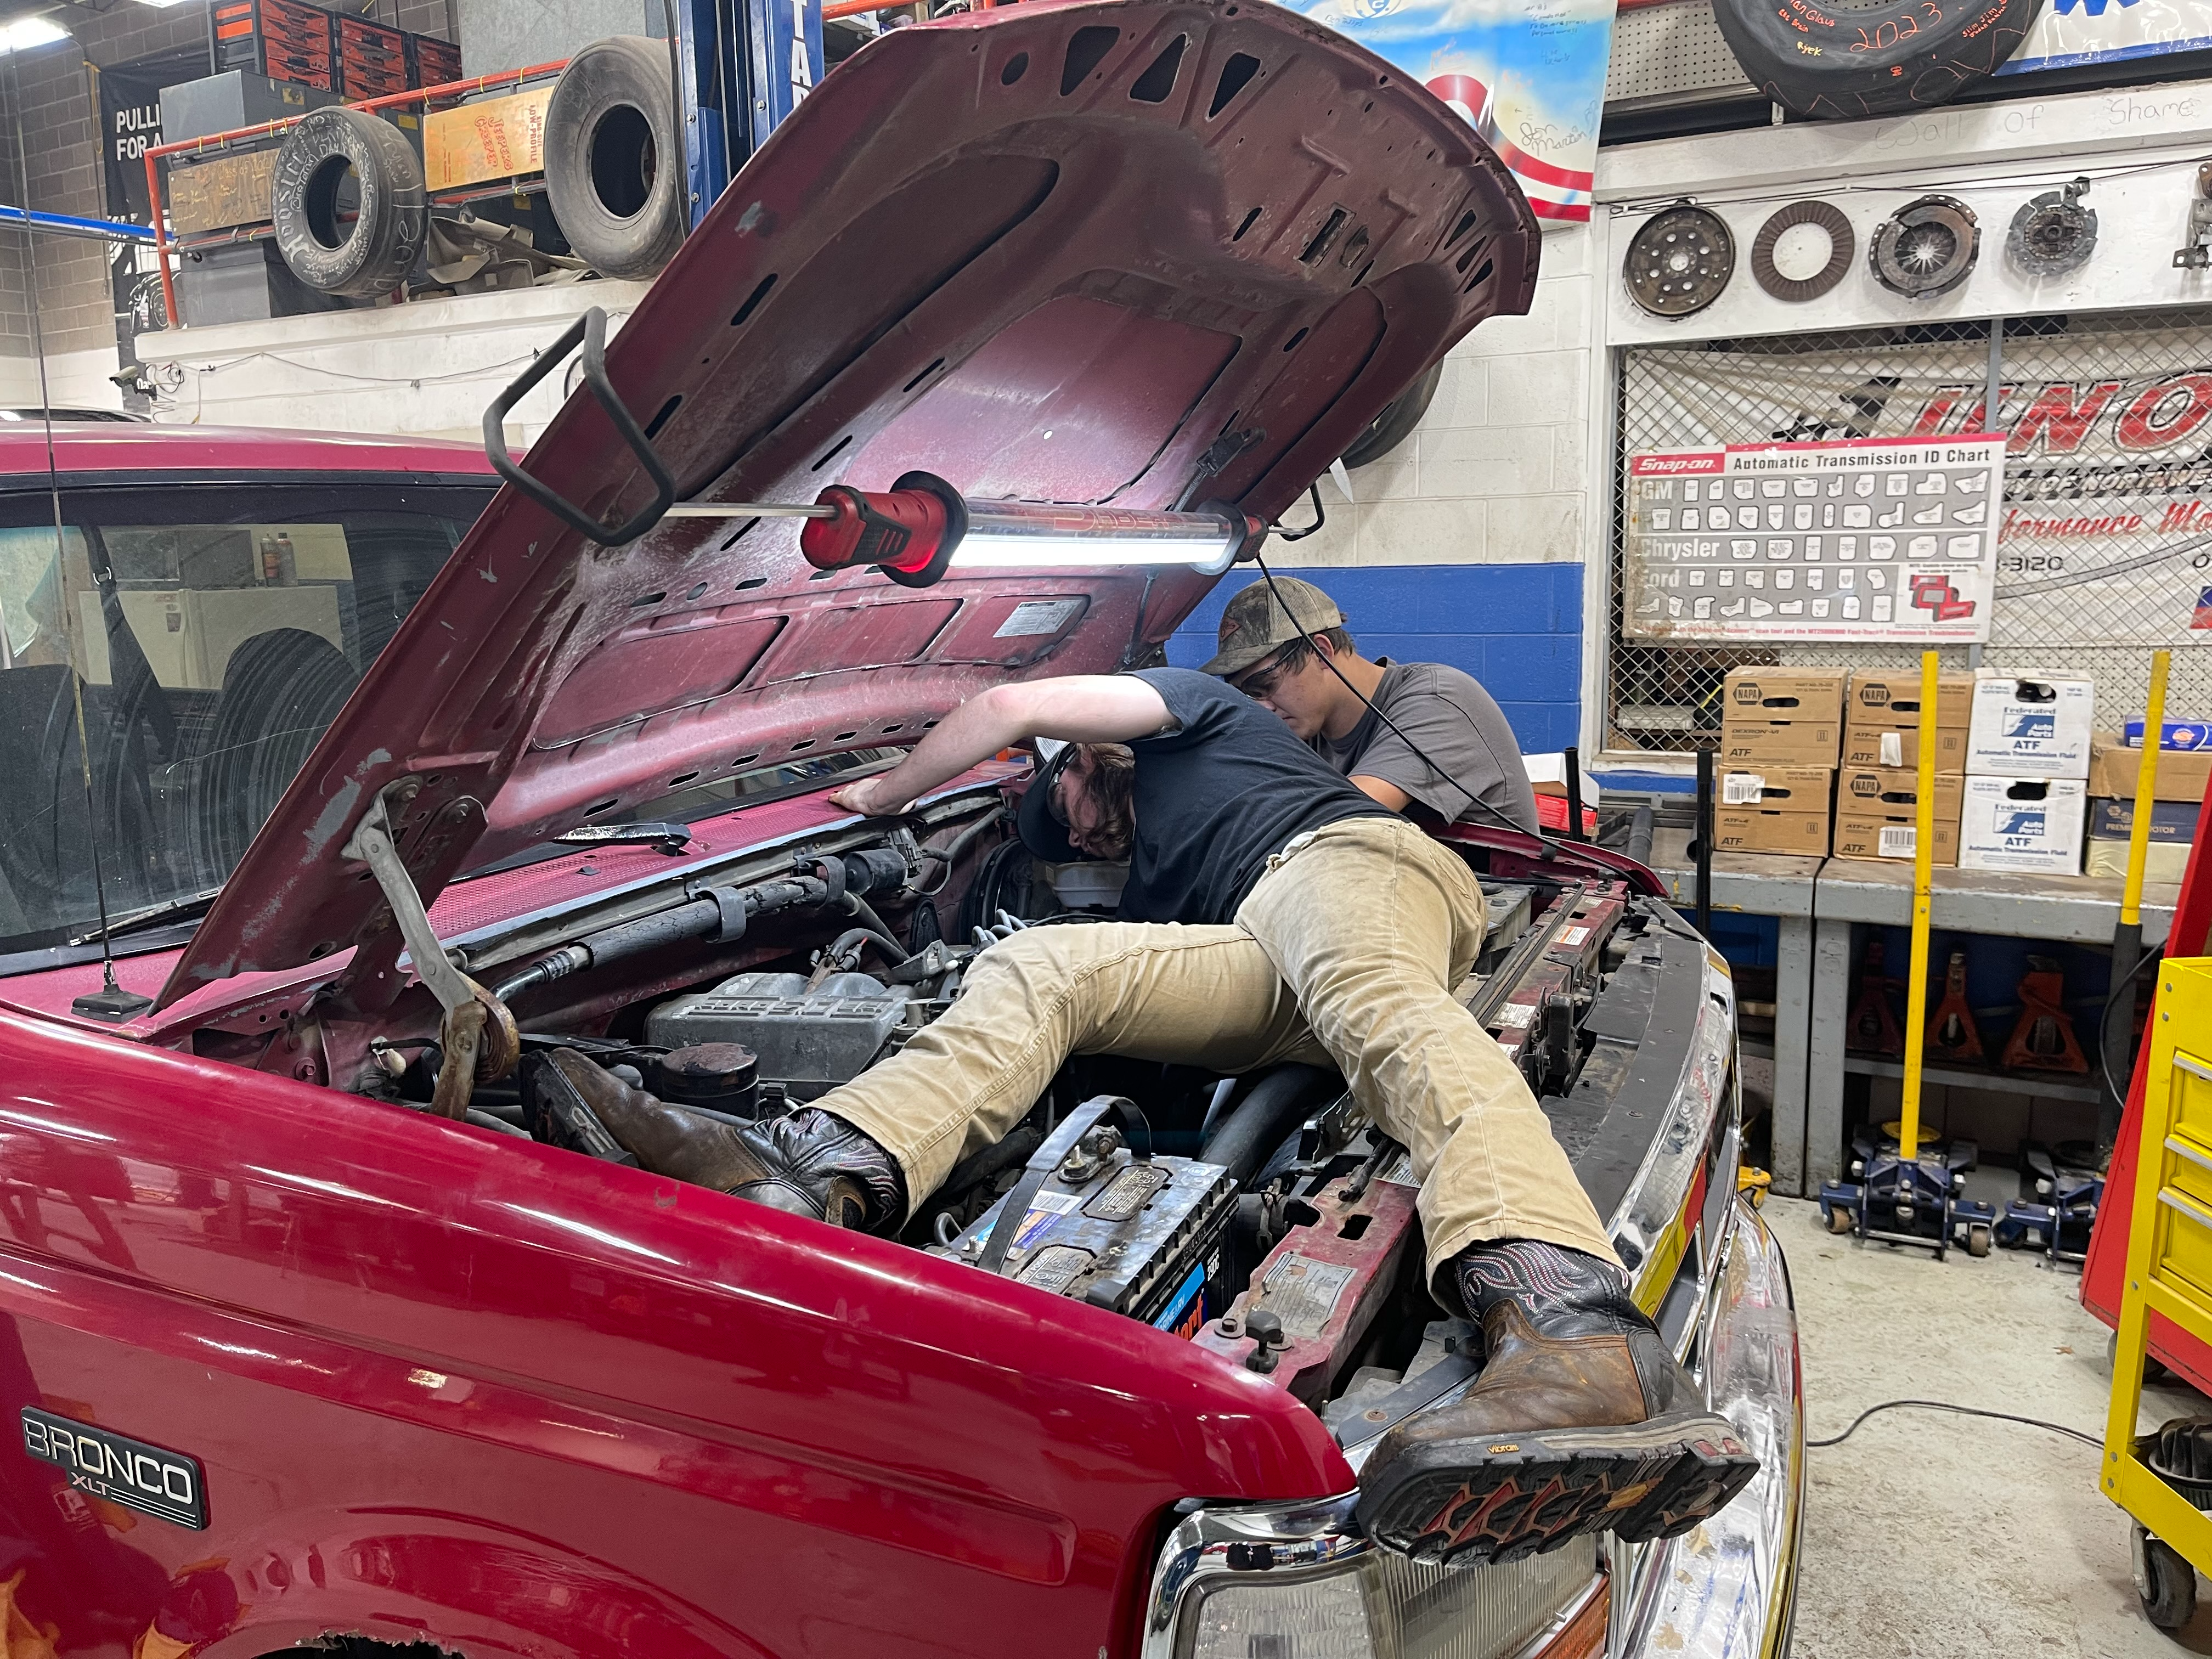 Mechanic checking a car engine